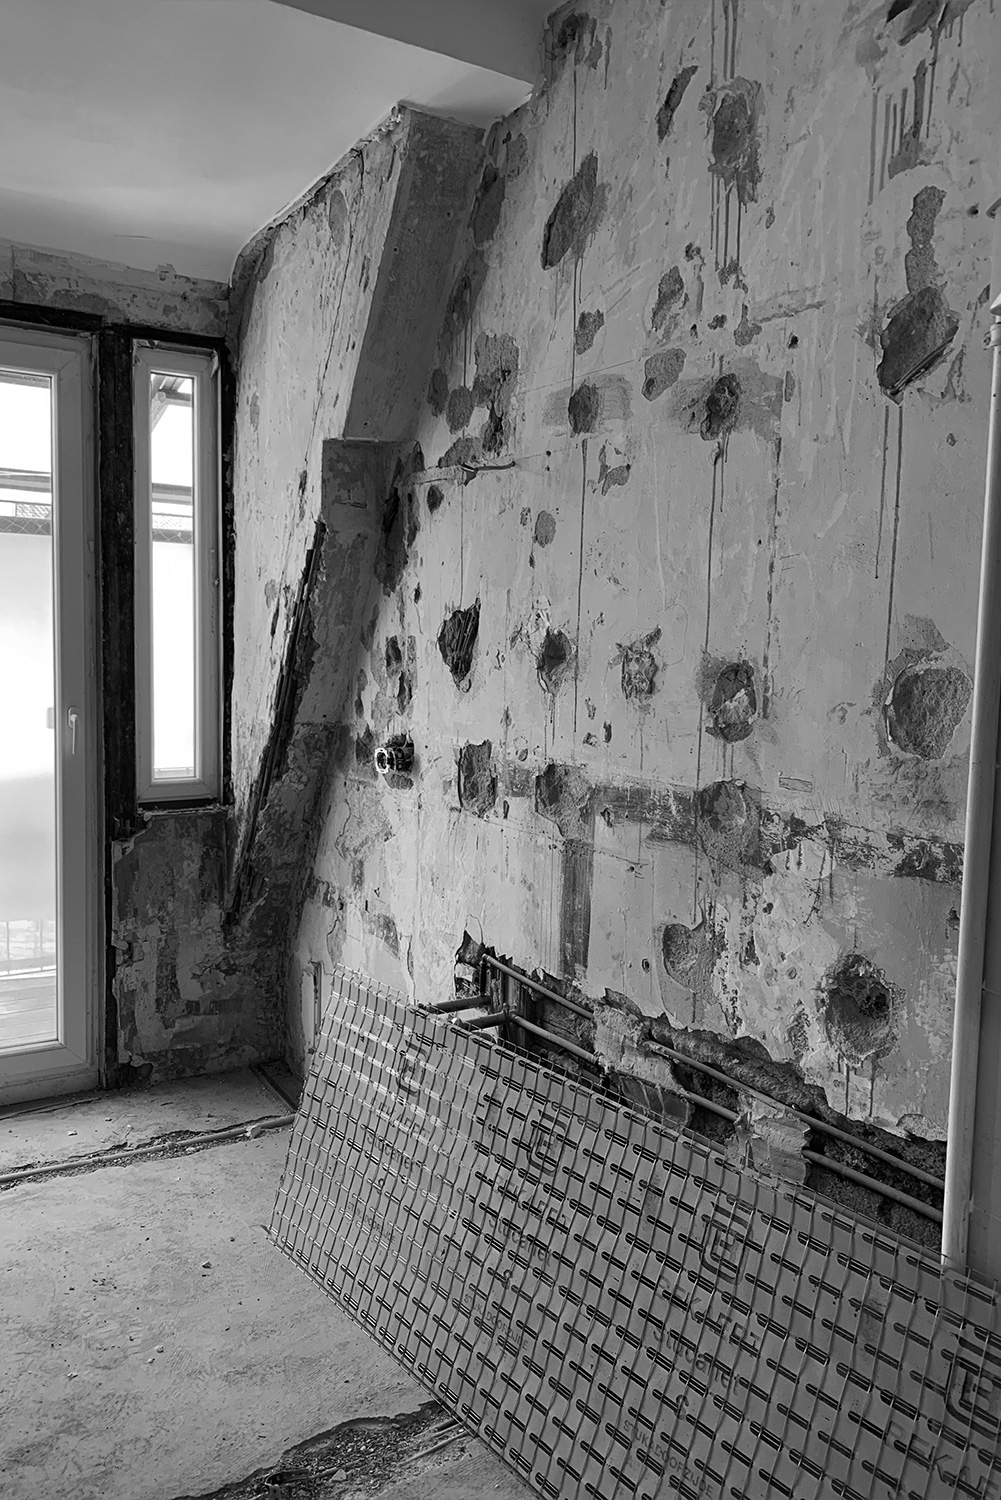 Wände eines im Bau befindlichen Badezimmers mit freiliegenden Balken, die sich in schlechtem Zustand befinden.